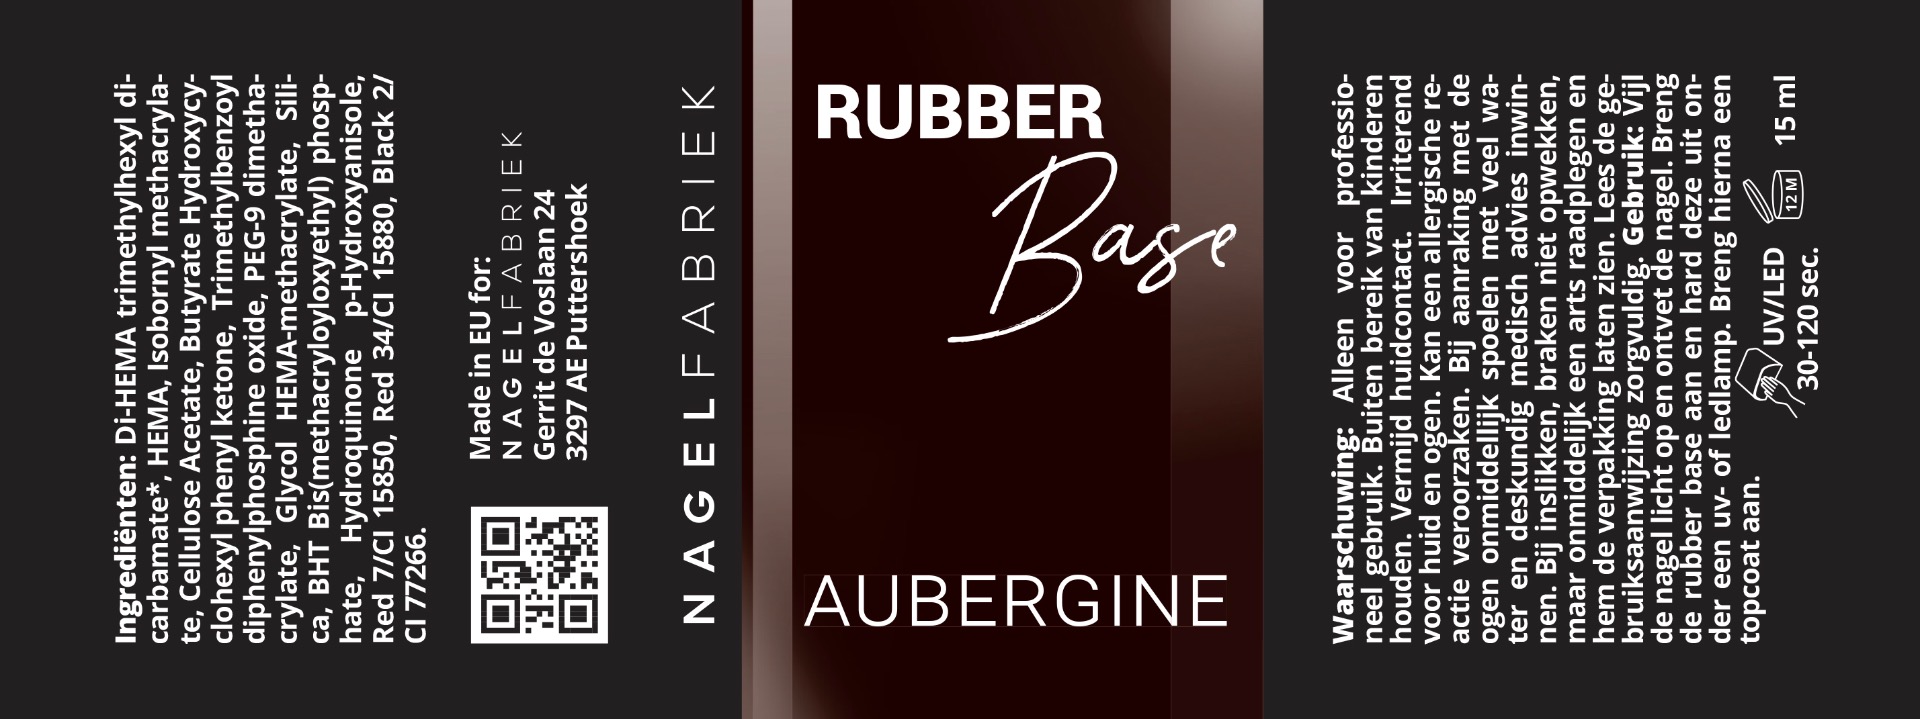 Label Rubber Base Aubergine 15 ml